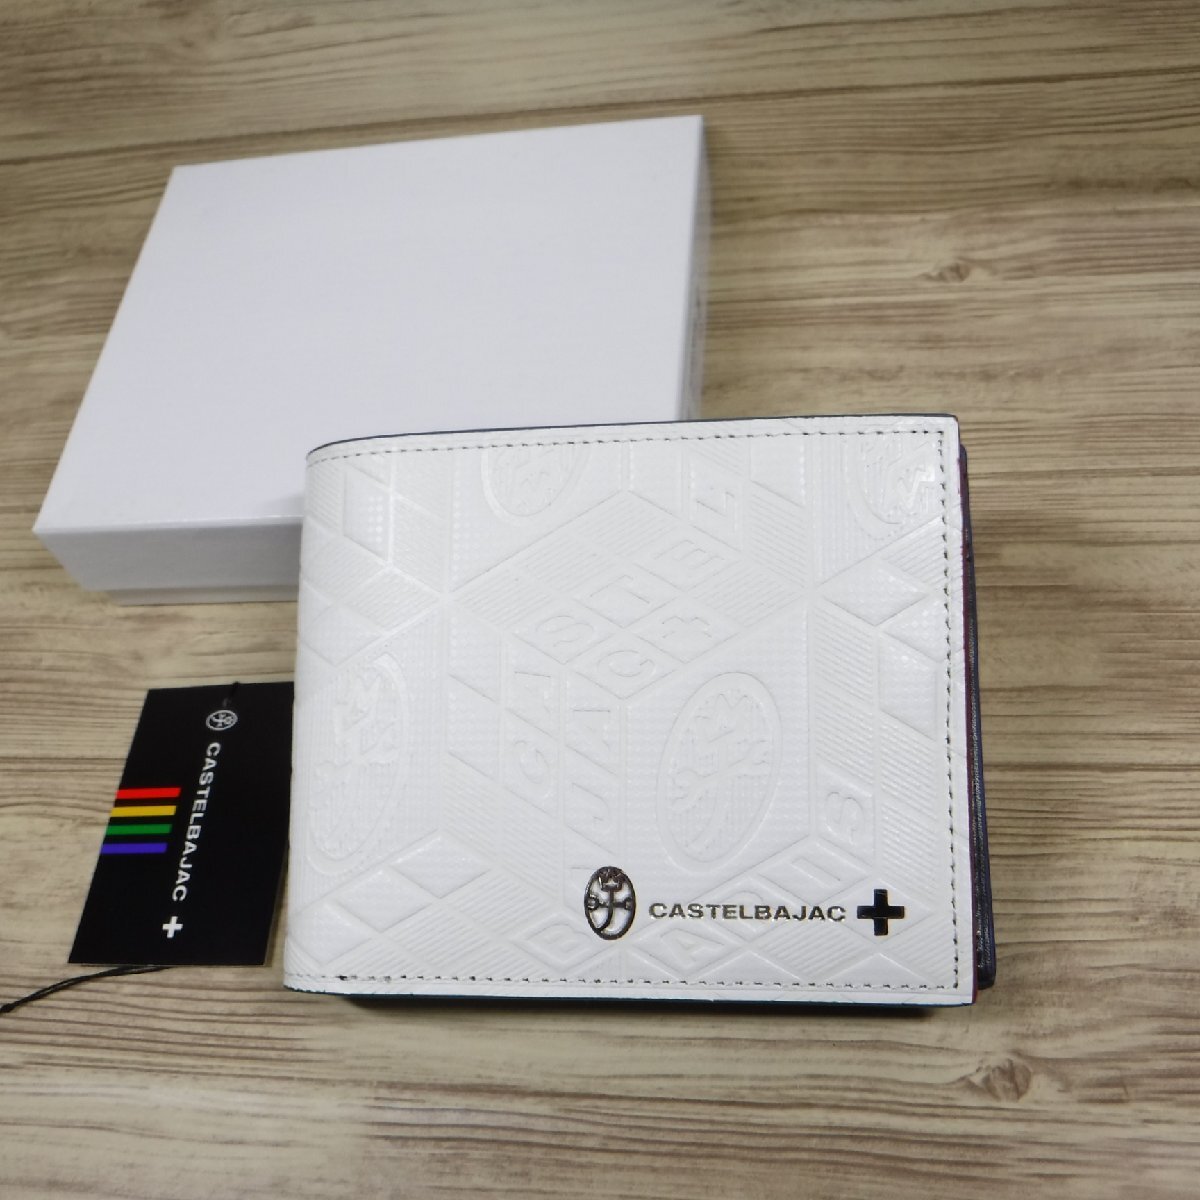 QQ37 Castelbajac обычная цена 17600 иен новый товар белый 2. складывать кошелек карта место хранения кошелек для мелочи . имеется ta язык телячья кожа белый мужской 067614 CASTELBAJAC